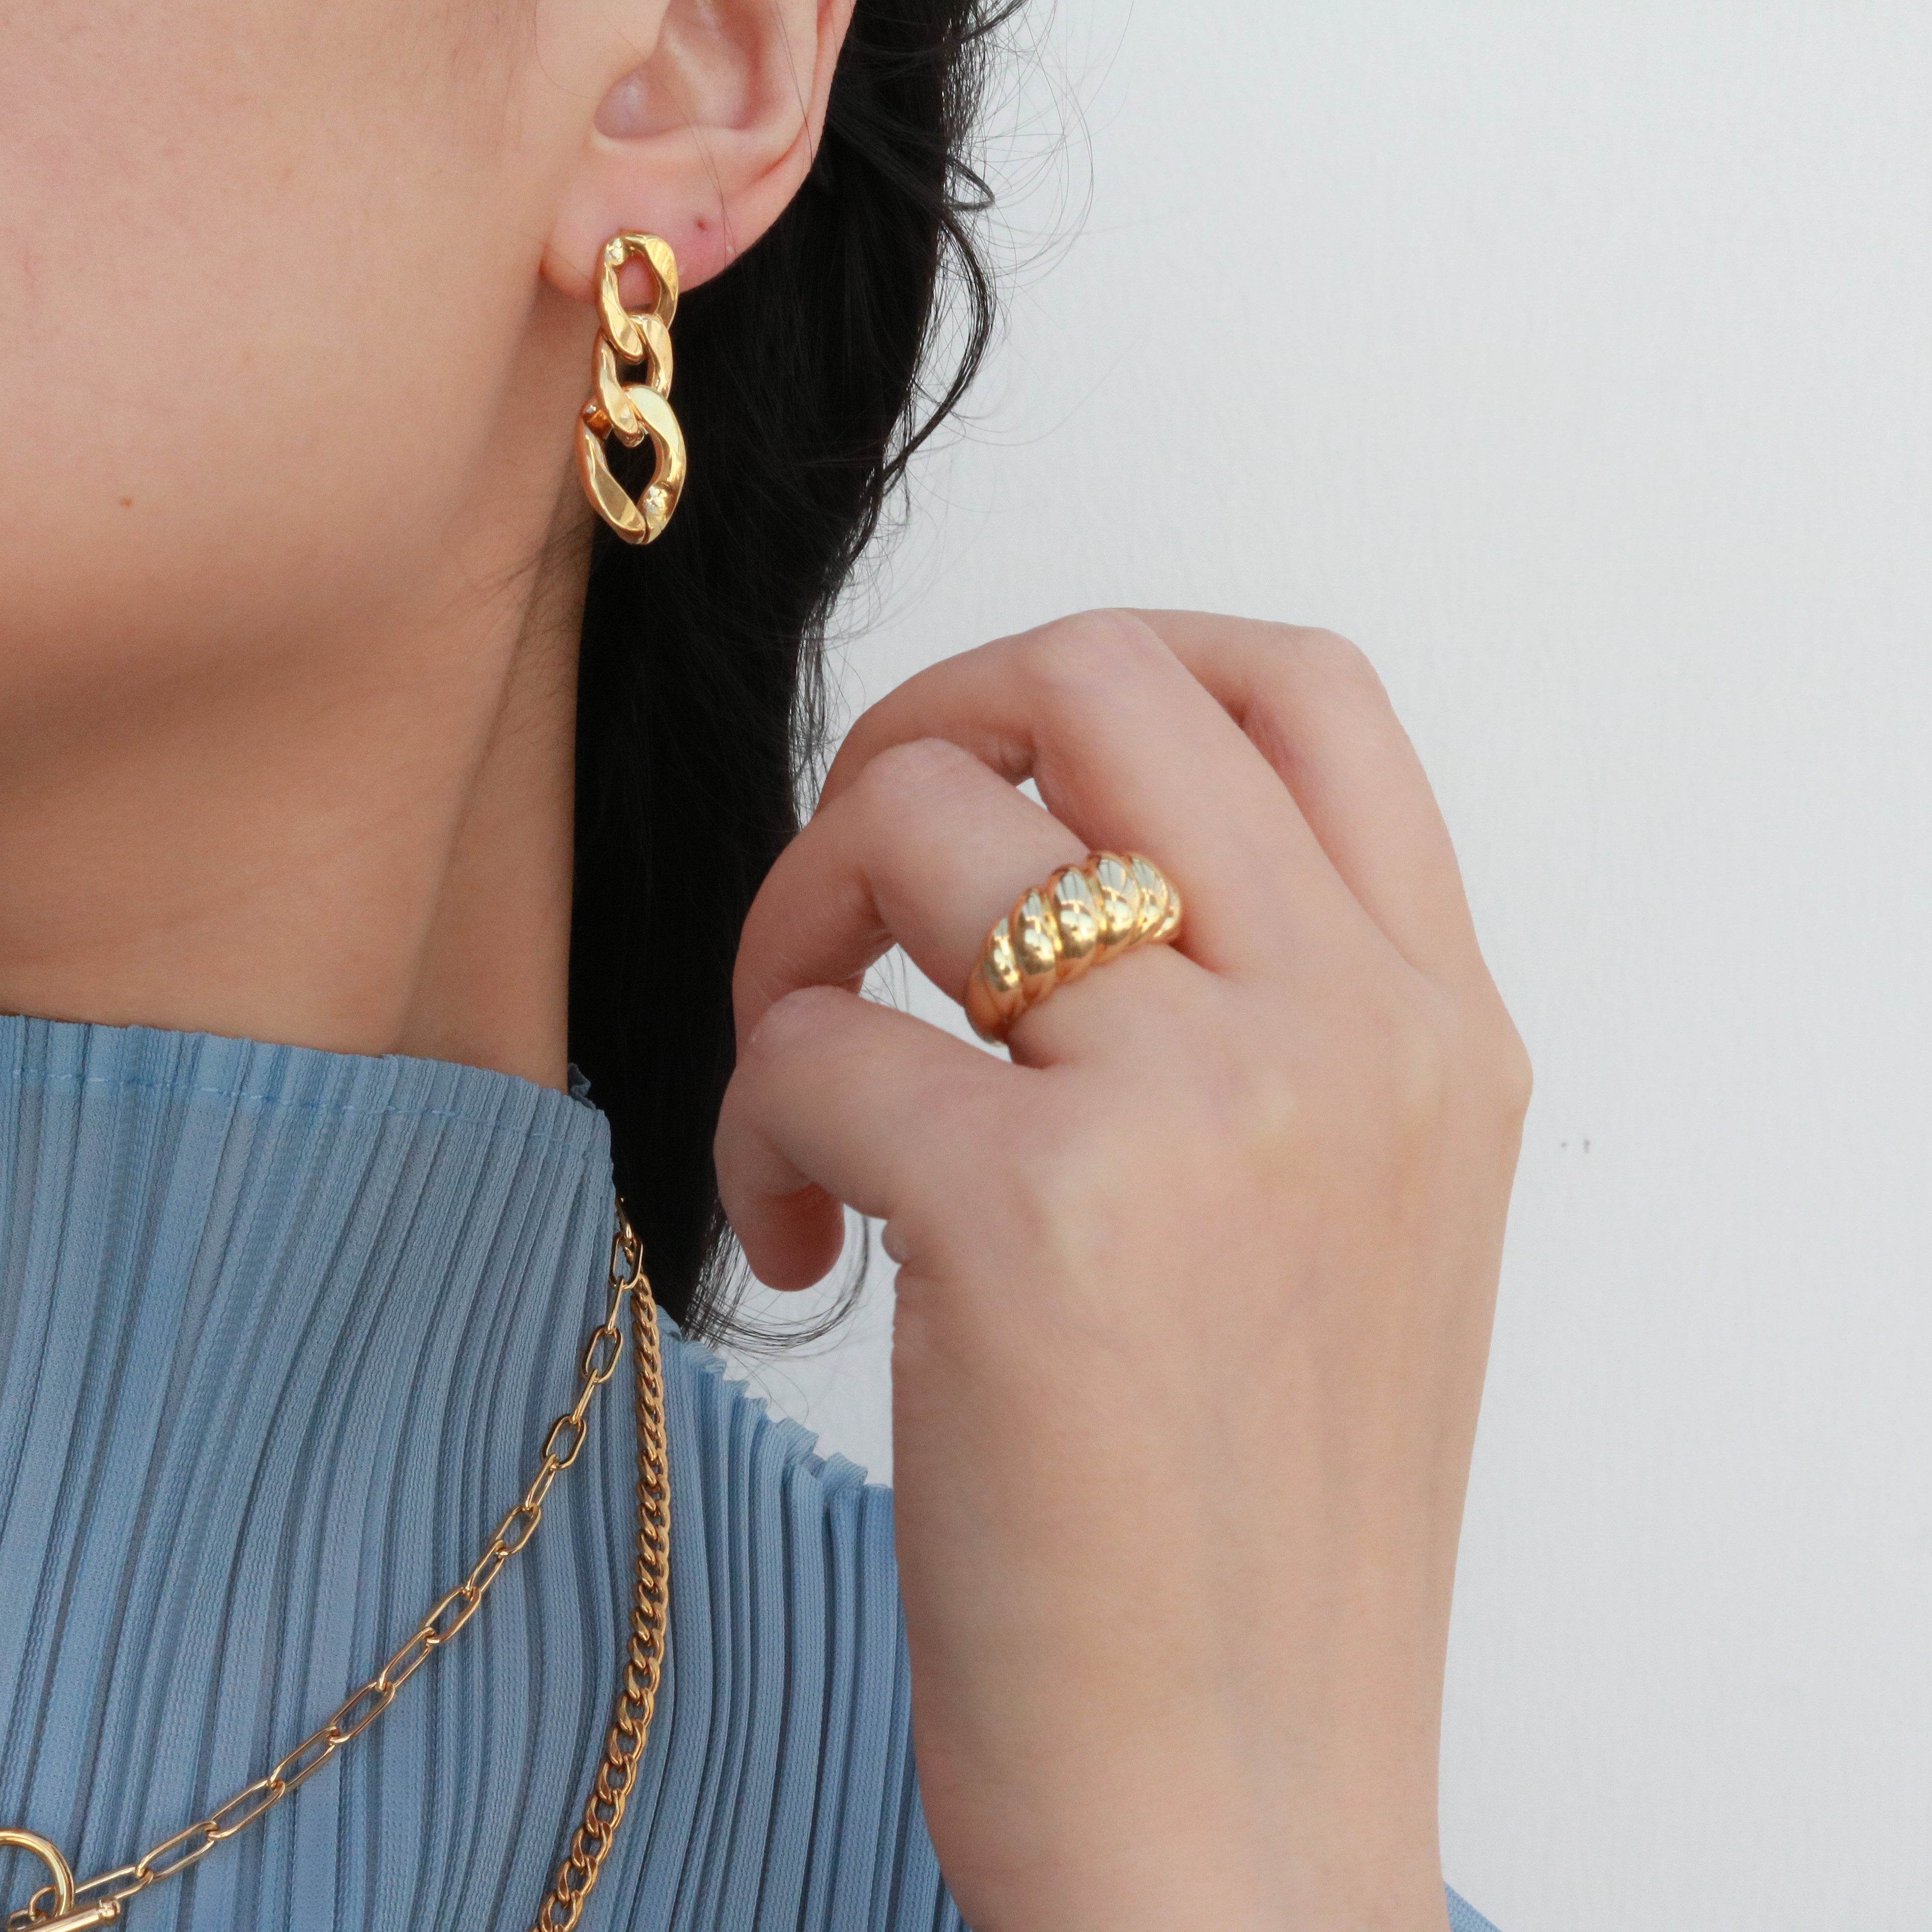 Meideya Jewelry - Adele Chain Earrings in 18k gold